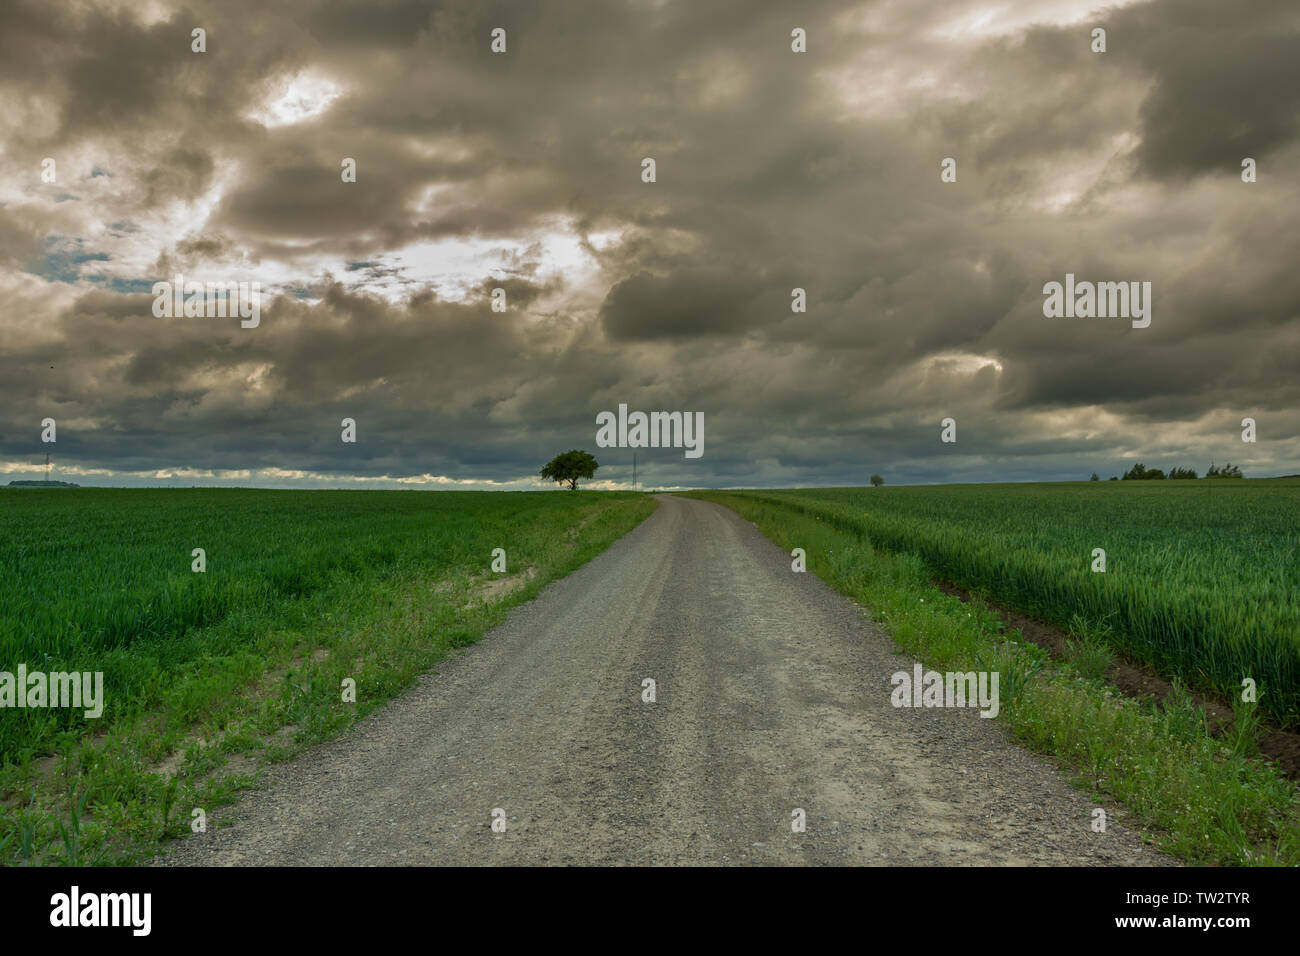 Strada di ghiaia attraverso campi verdi e le nuvole scure nel cielo. Staw, Polonia Foto Stock